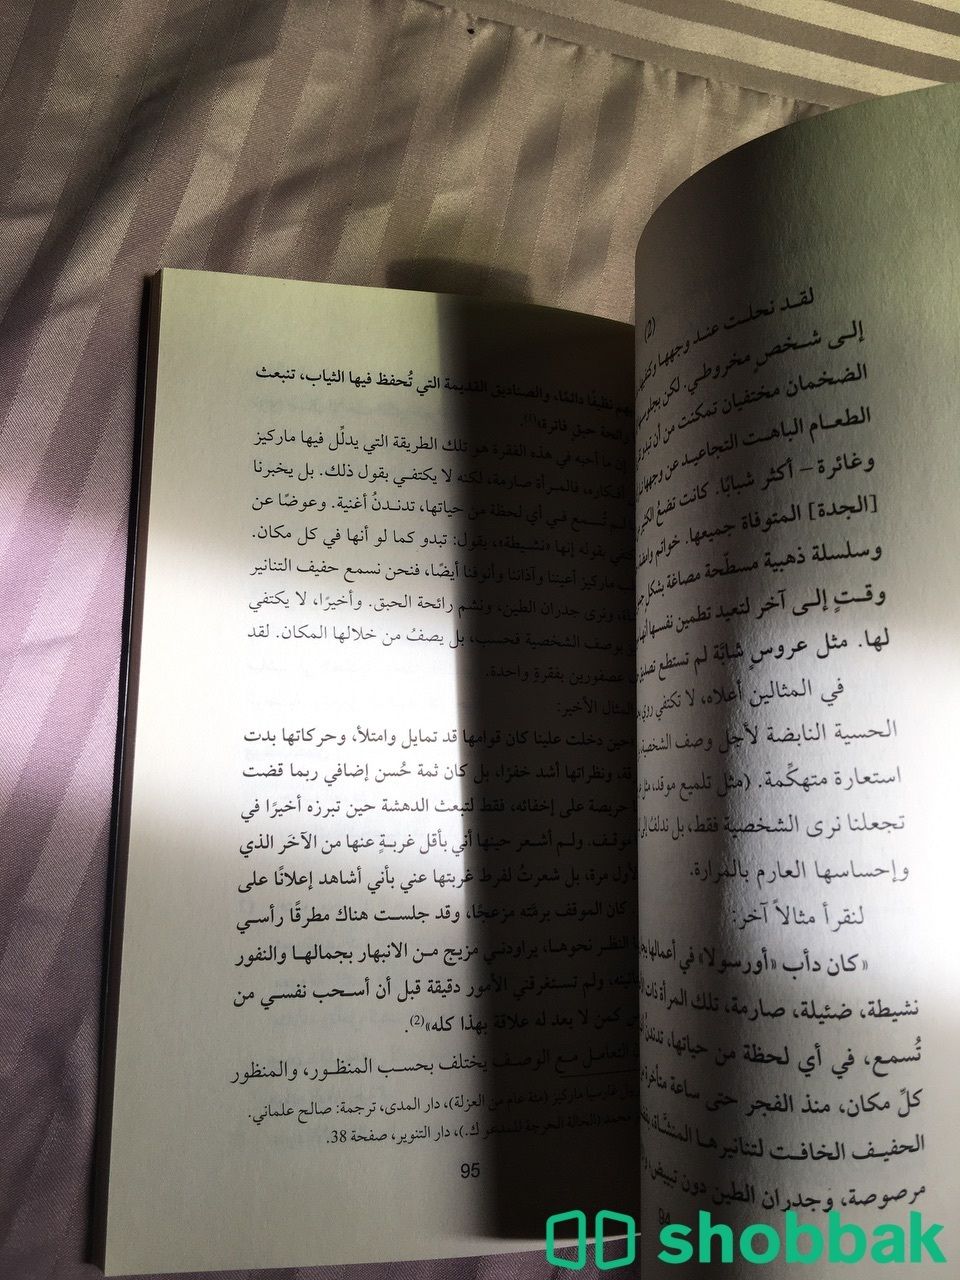 كتاب تعليمي Shobbak Saudi Arabia